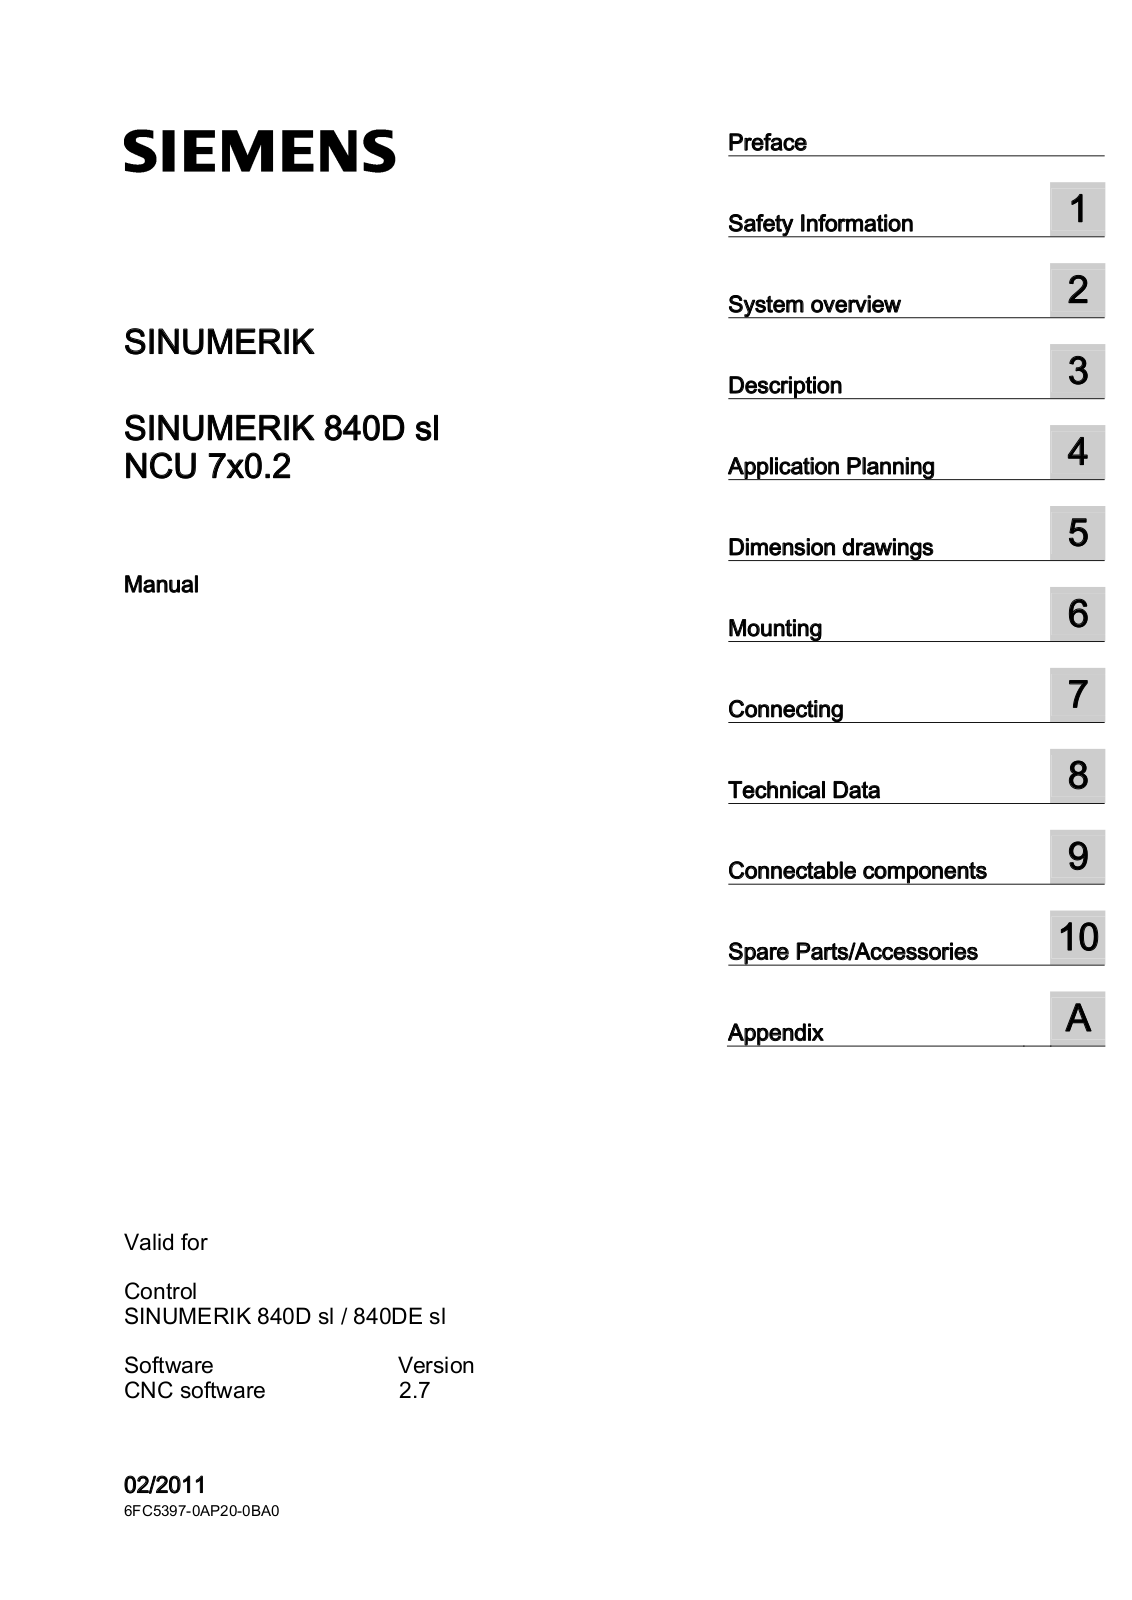 Siemens NCU 7 0.2, SINUMERIK 840DE sl, NCU 720.2 PN, NCU 710 .2, SINUMERIK 840D sl Series Manual